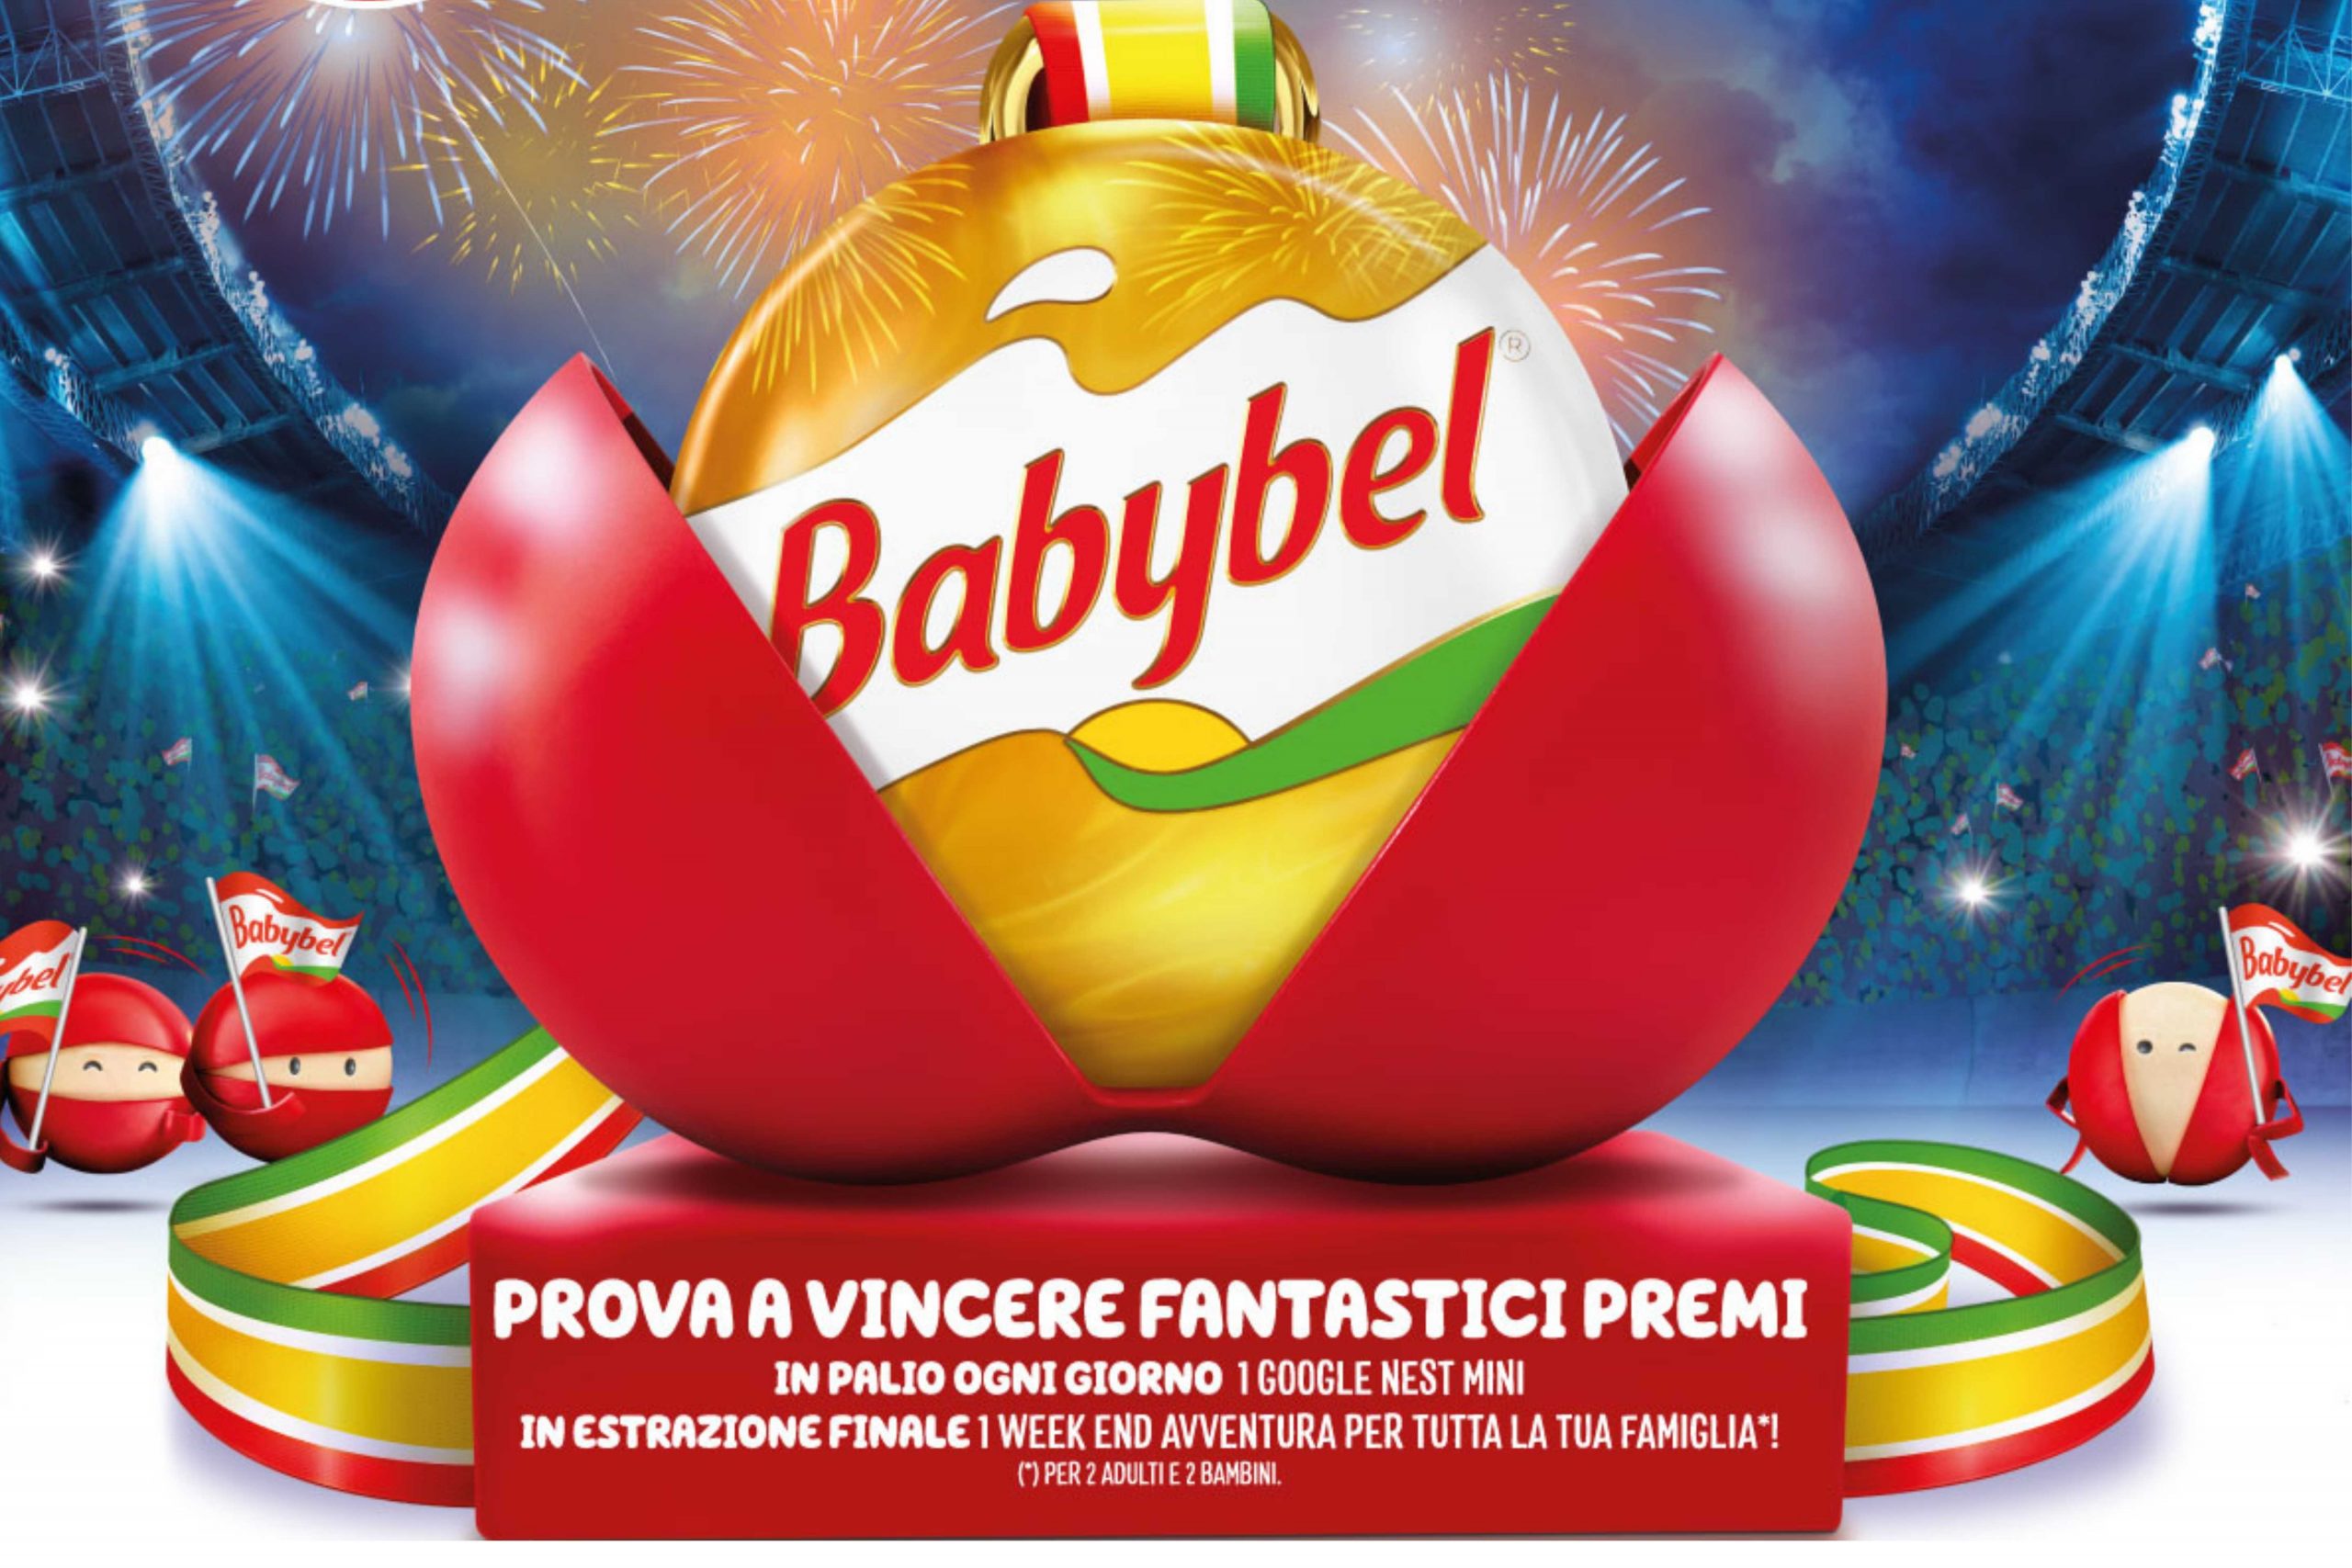 Concorso “Lo snack dei campioni” by Babybel: come vincere Google Nest e un weekend all’avventura per tutta la famiglia